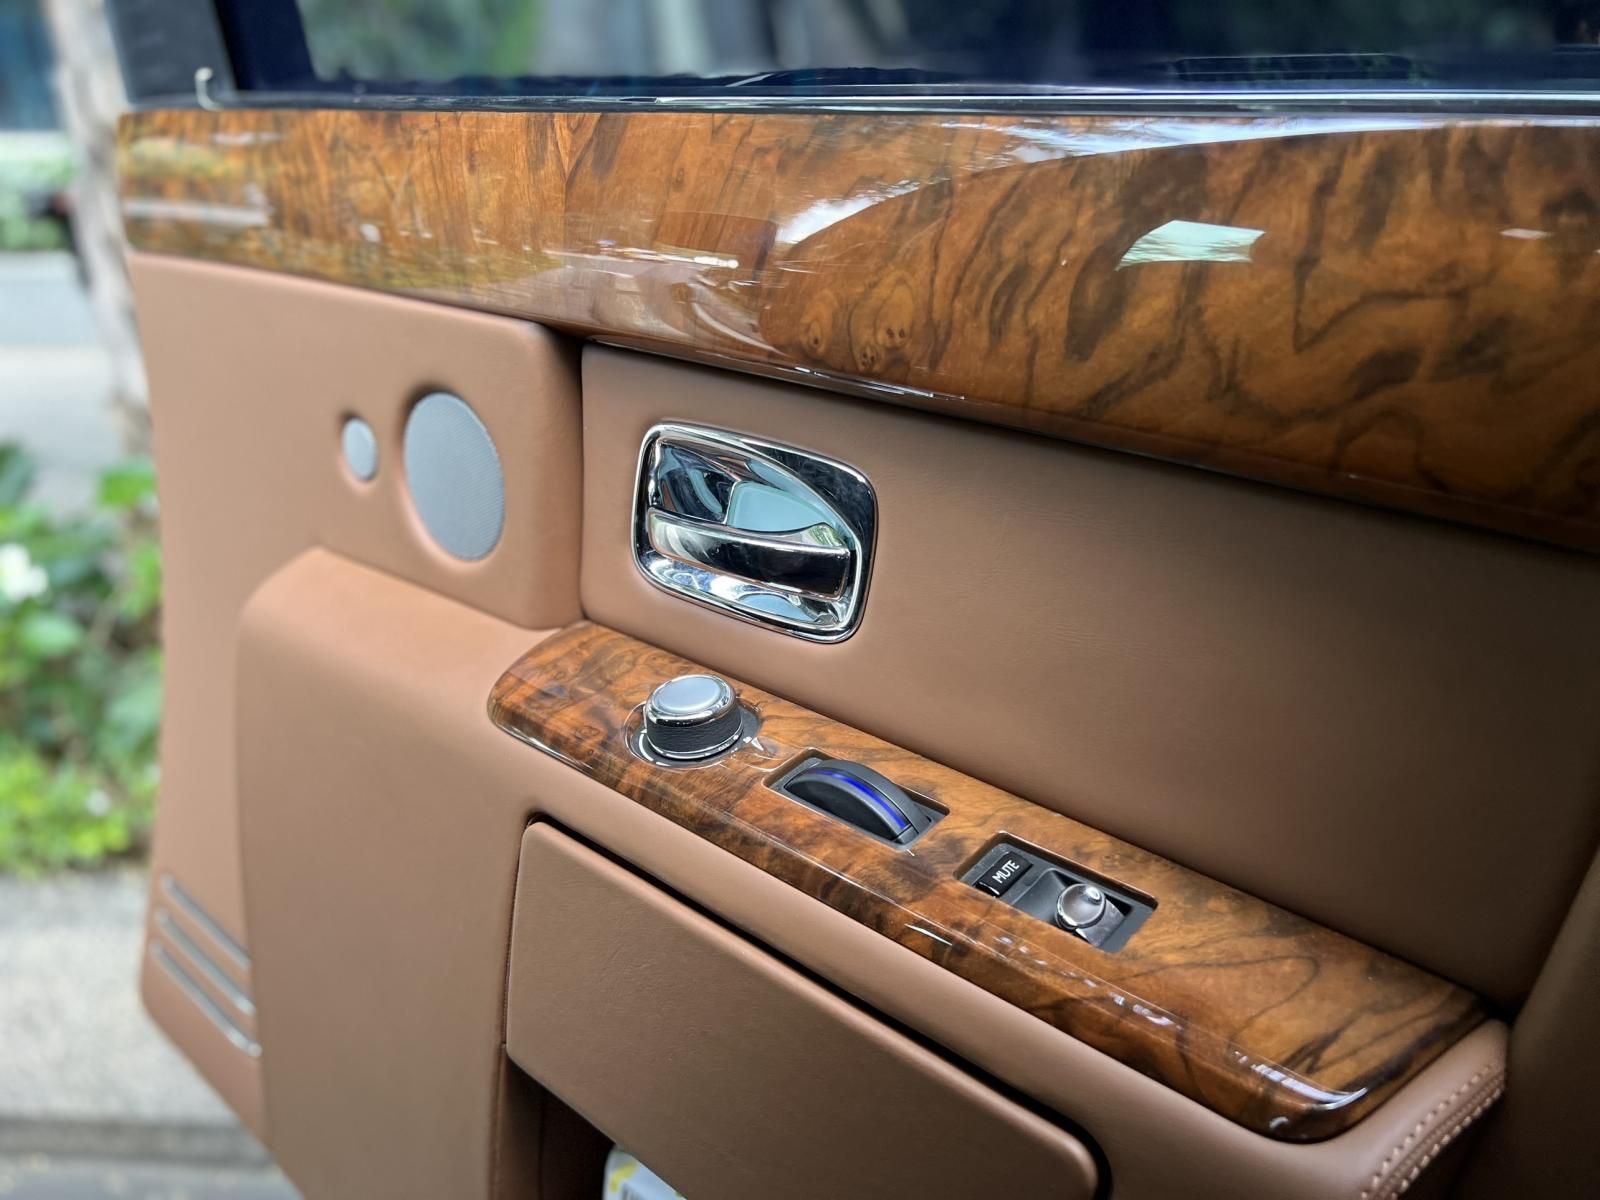 Rolls-Royce Phantom 2014 - Cần bán xe Rolls-Royce Phantom sản xuất 2014 xe chạy 1,5 vạn km  như mới